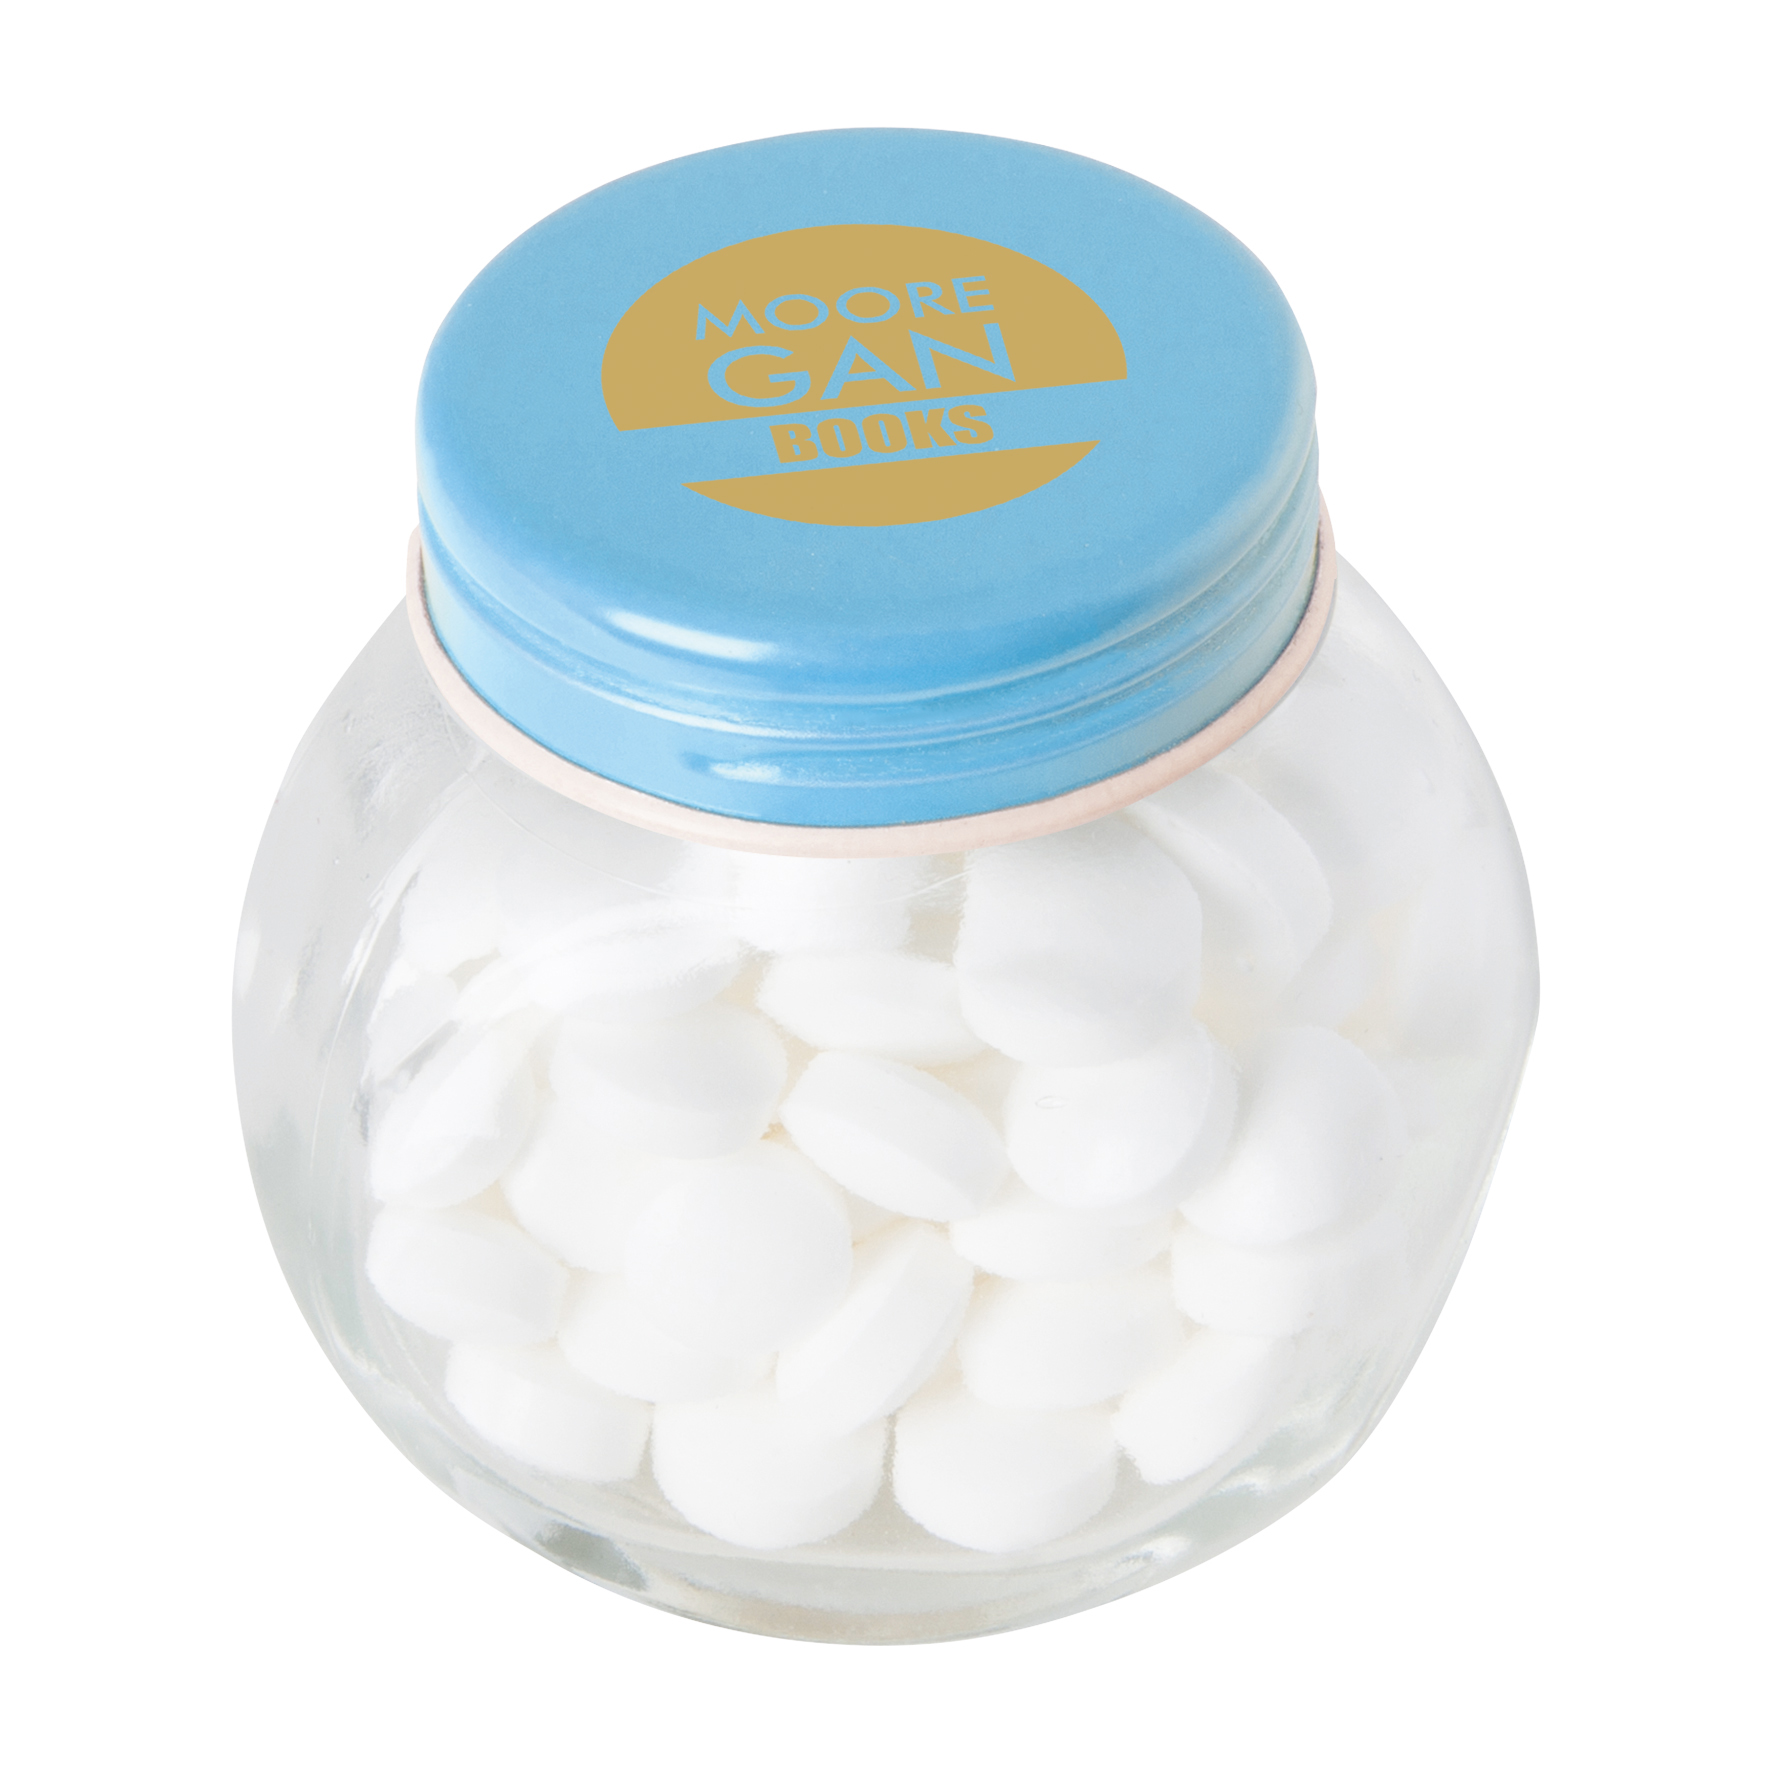 c 0160dmi 18 02 - Small glass jar with mints